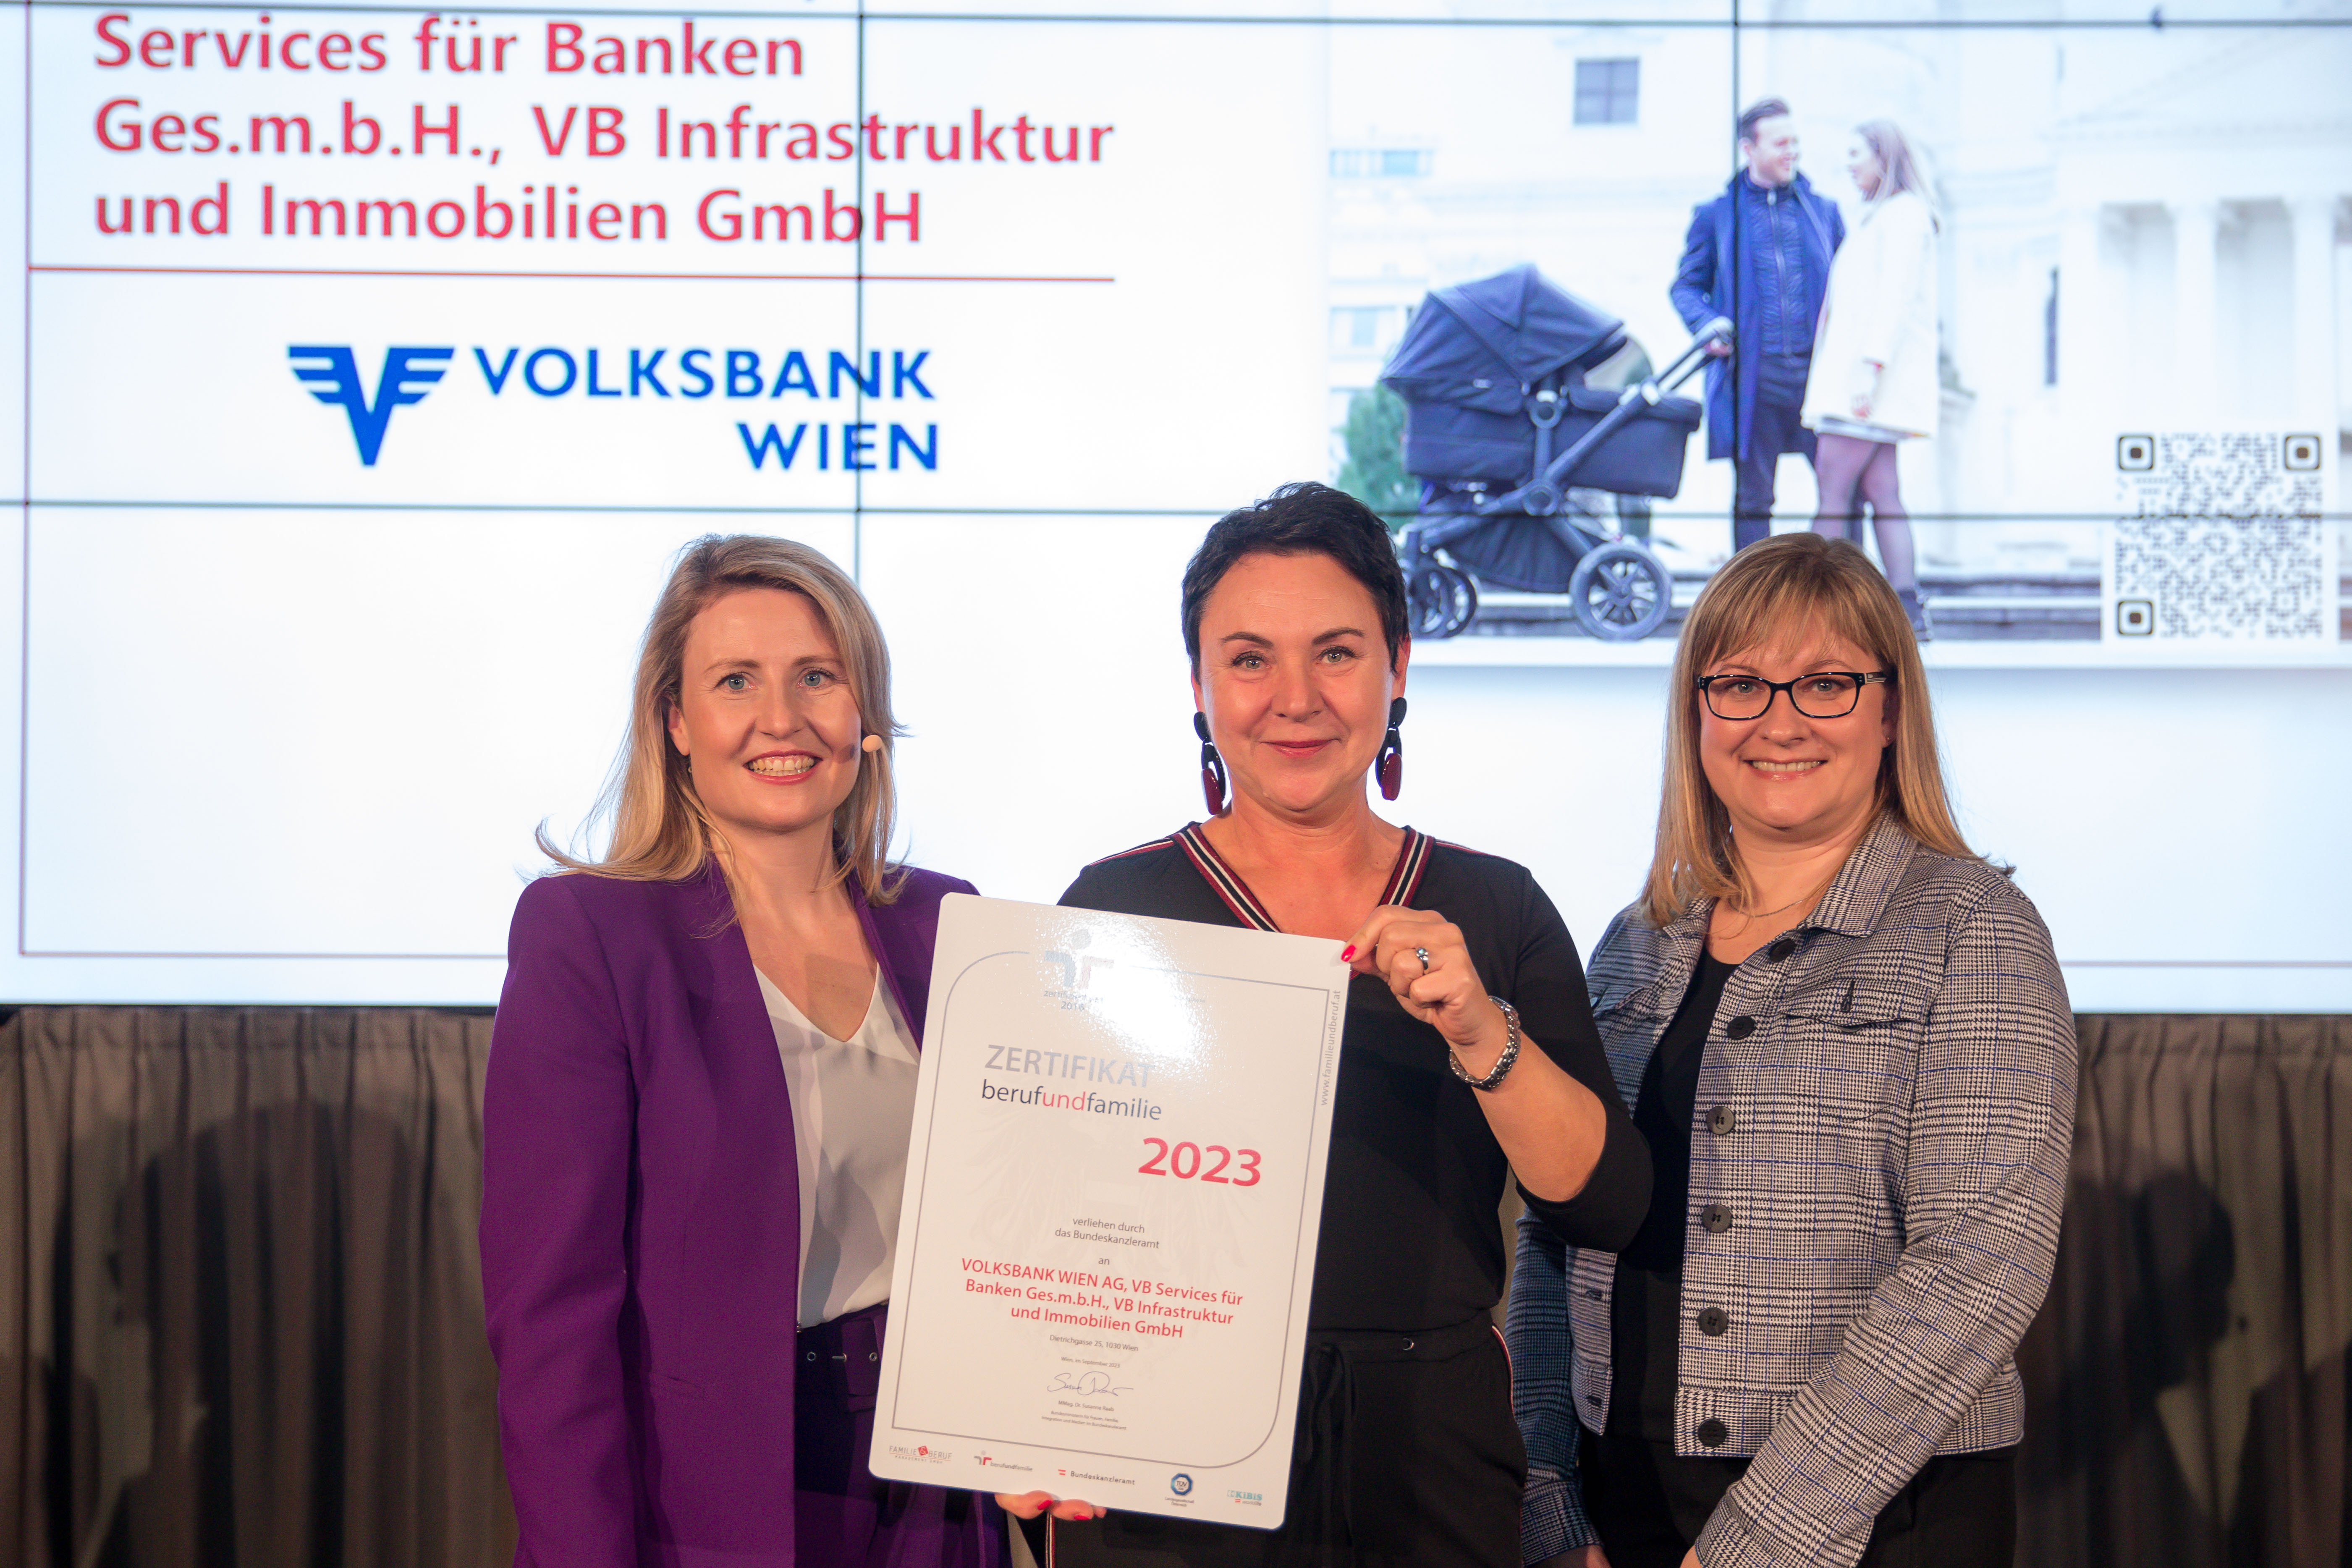 VOLKSBANK WIEN AG, VB Services für Banken Ges.m.b.H., VB Infrastruktur und Immobilien GmbH